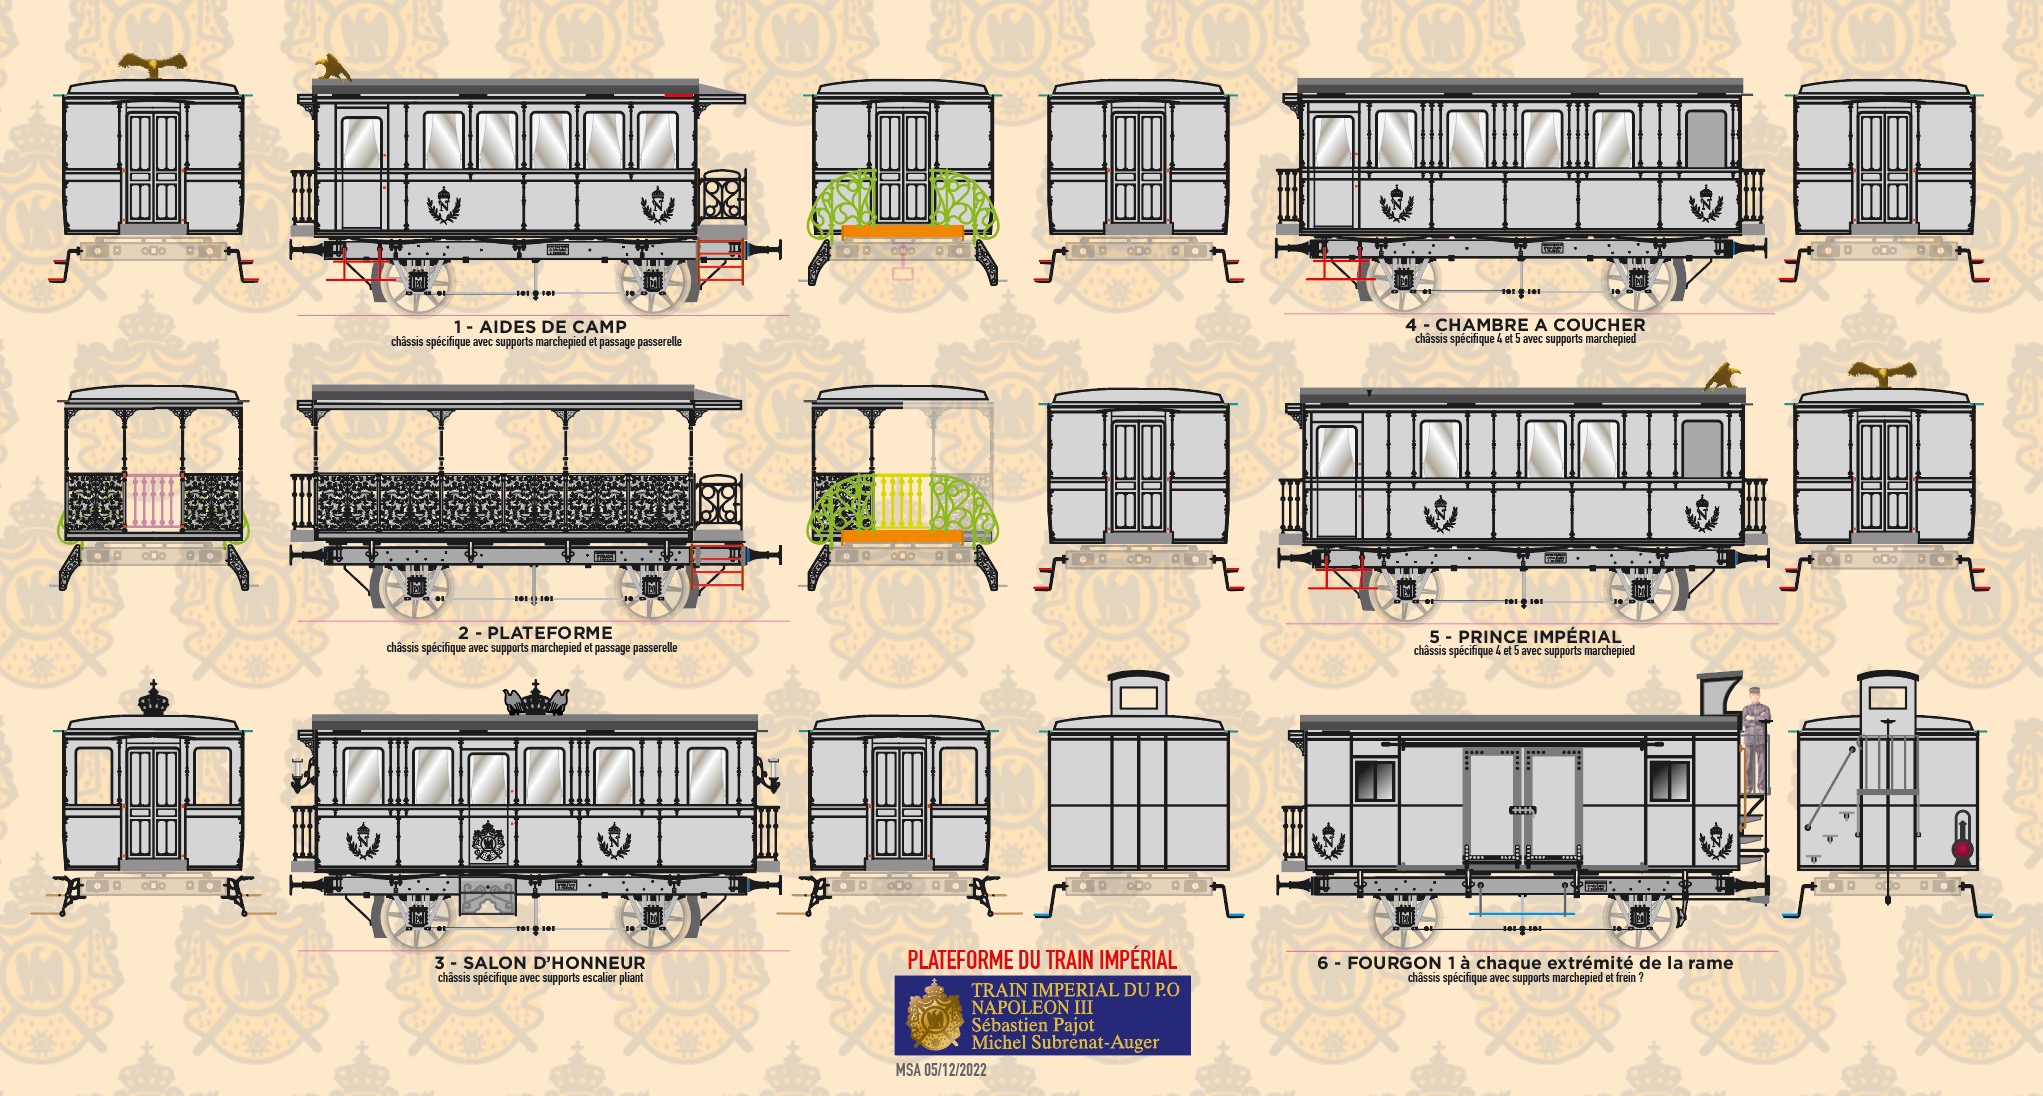 Les 6 wagons sont dessinés - version finale …